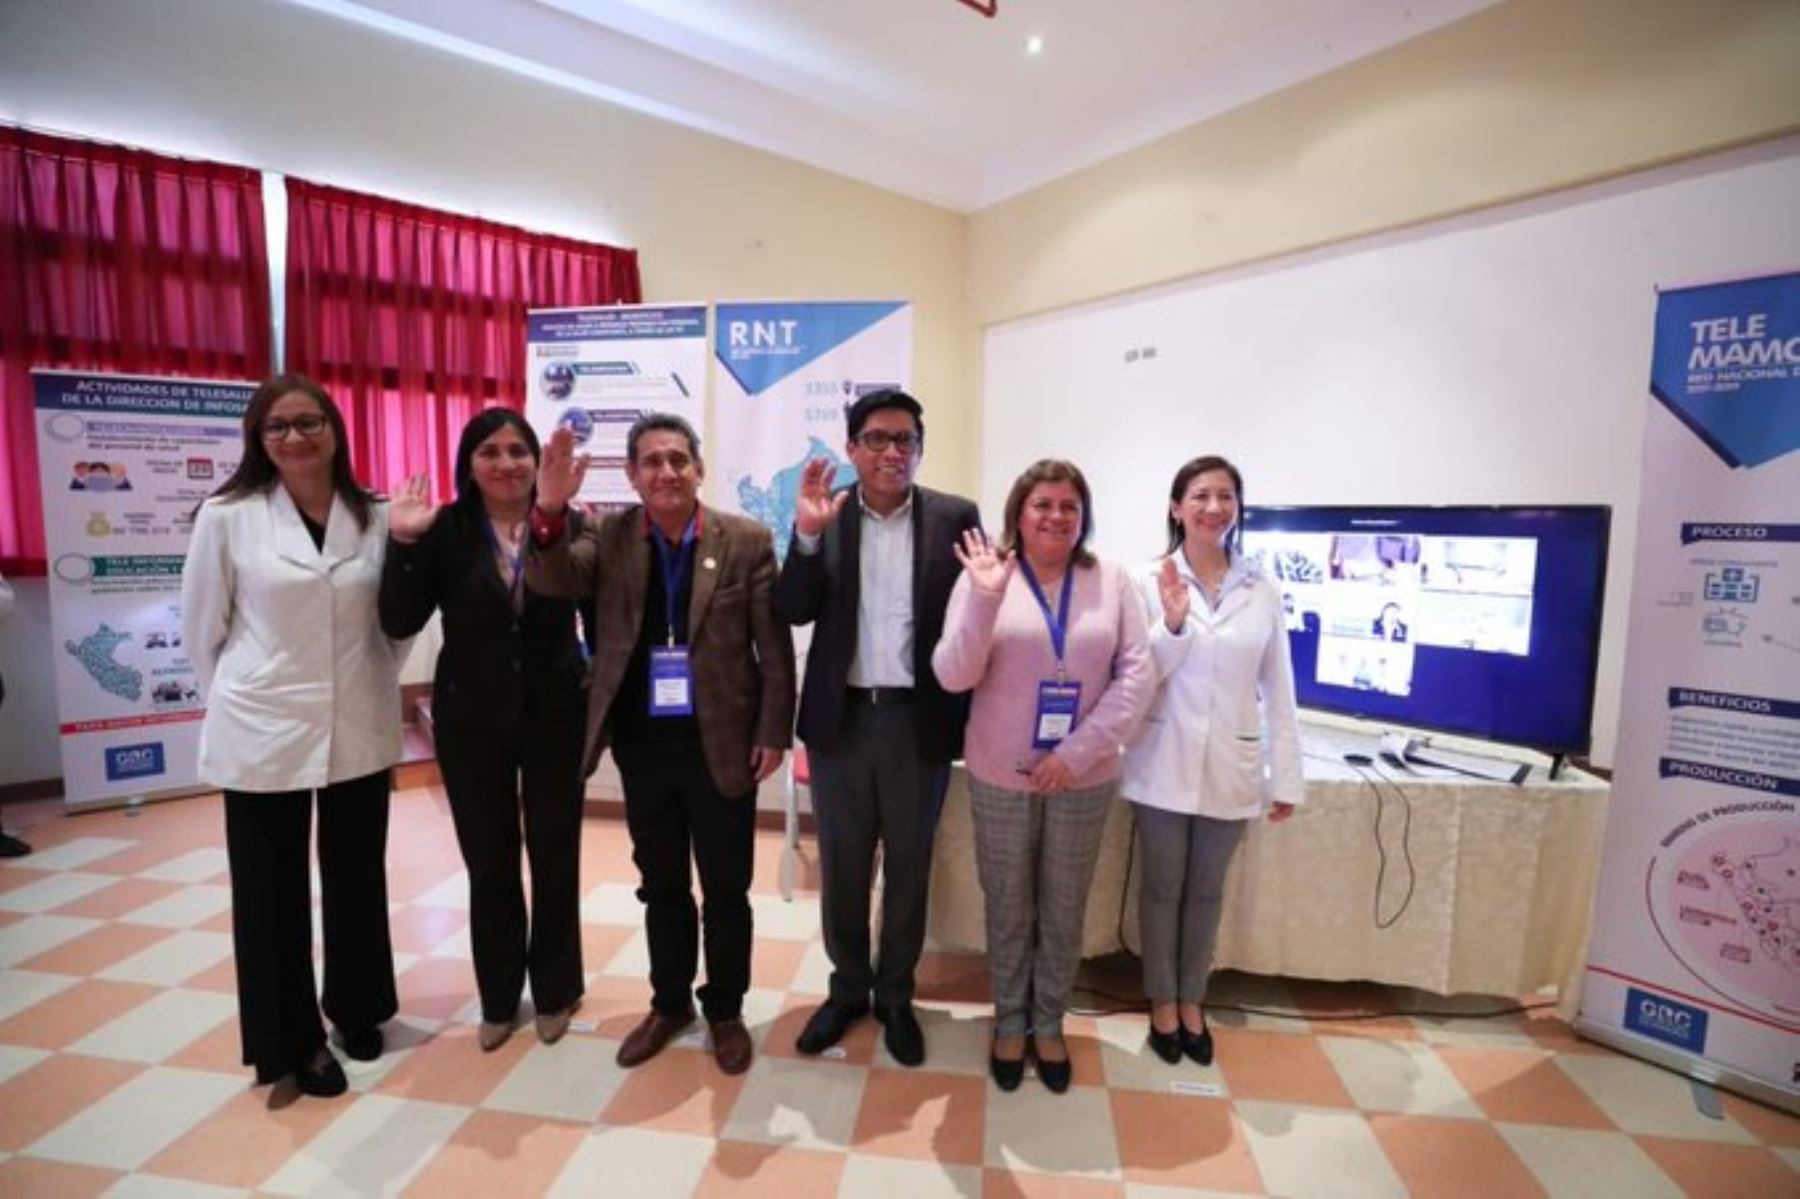 Telesalud democratiza servicios de salud y mejora calidad de vida de los peruanos, afirma presidente del Consejo de Ministros, Vicente Zeballos. Foto: ANDINA/Difusión